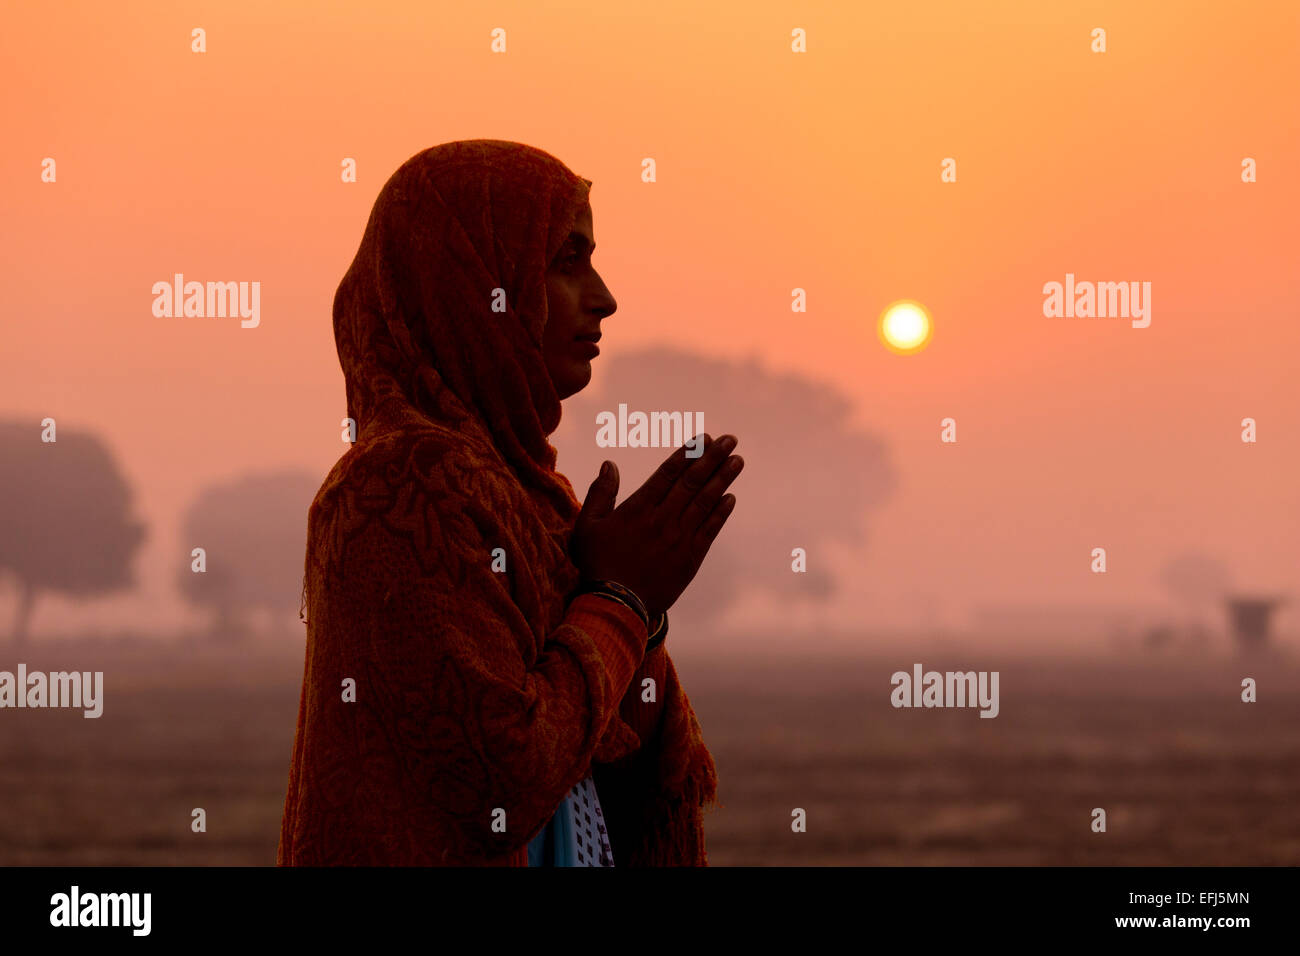 La India, Uttar Pradesh, Agra, India mujeres haciendo el Namaste saludo al amanecer. Foto de stock